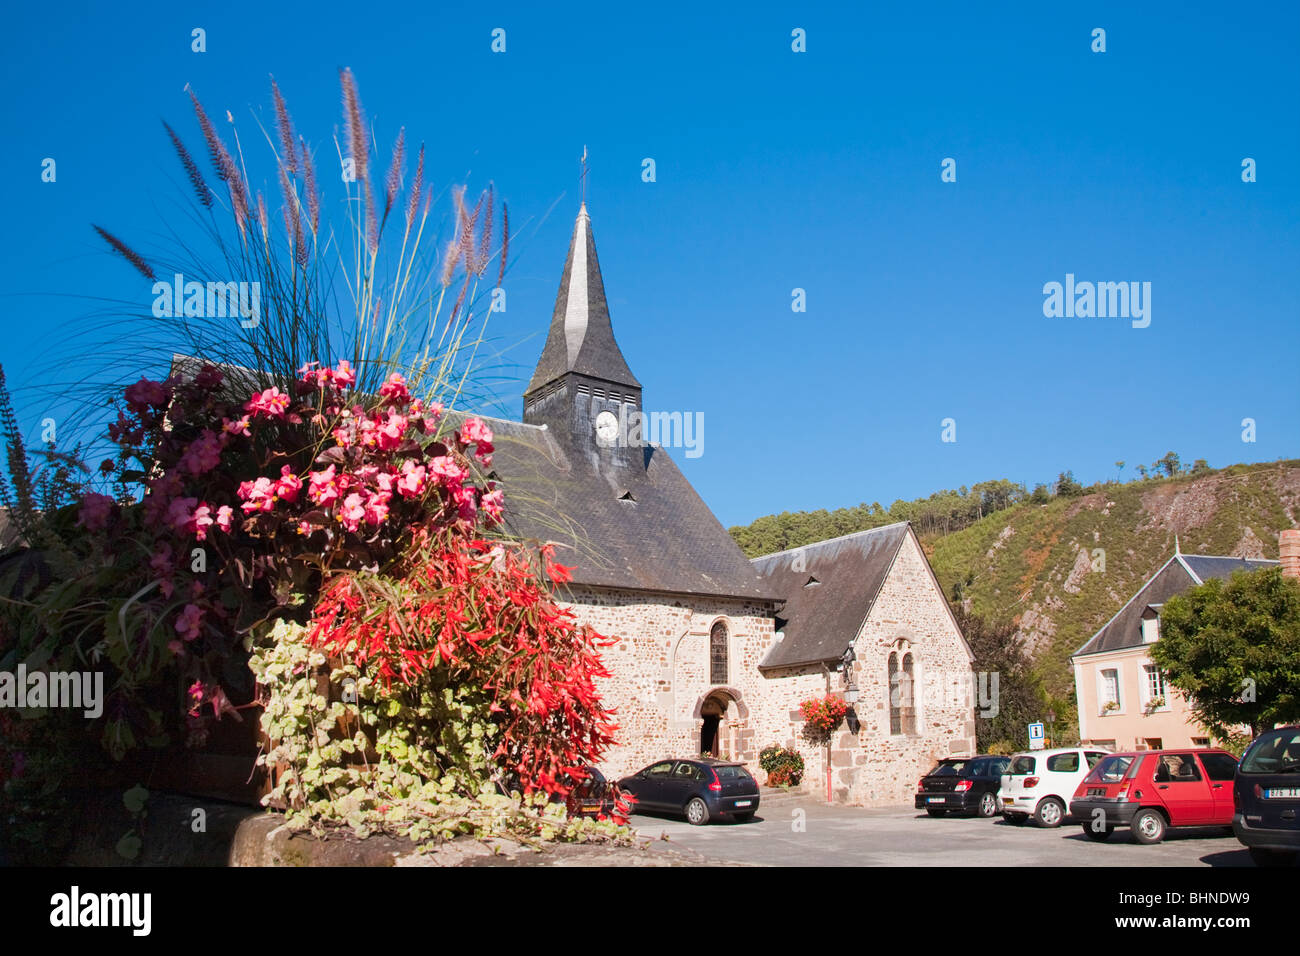 Chiesa e giardino fiorito con le automobili parcheggiate fuori nella Place de l'Eglise, St Leonard des Bois, Pays de la Loire, Francia Foto Stock